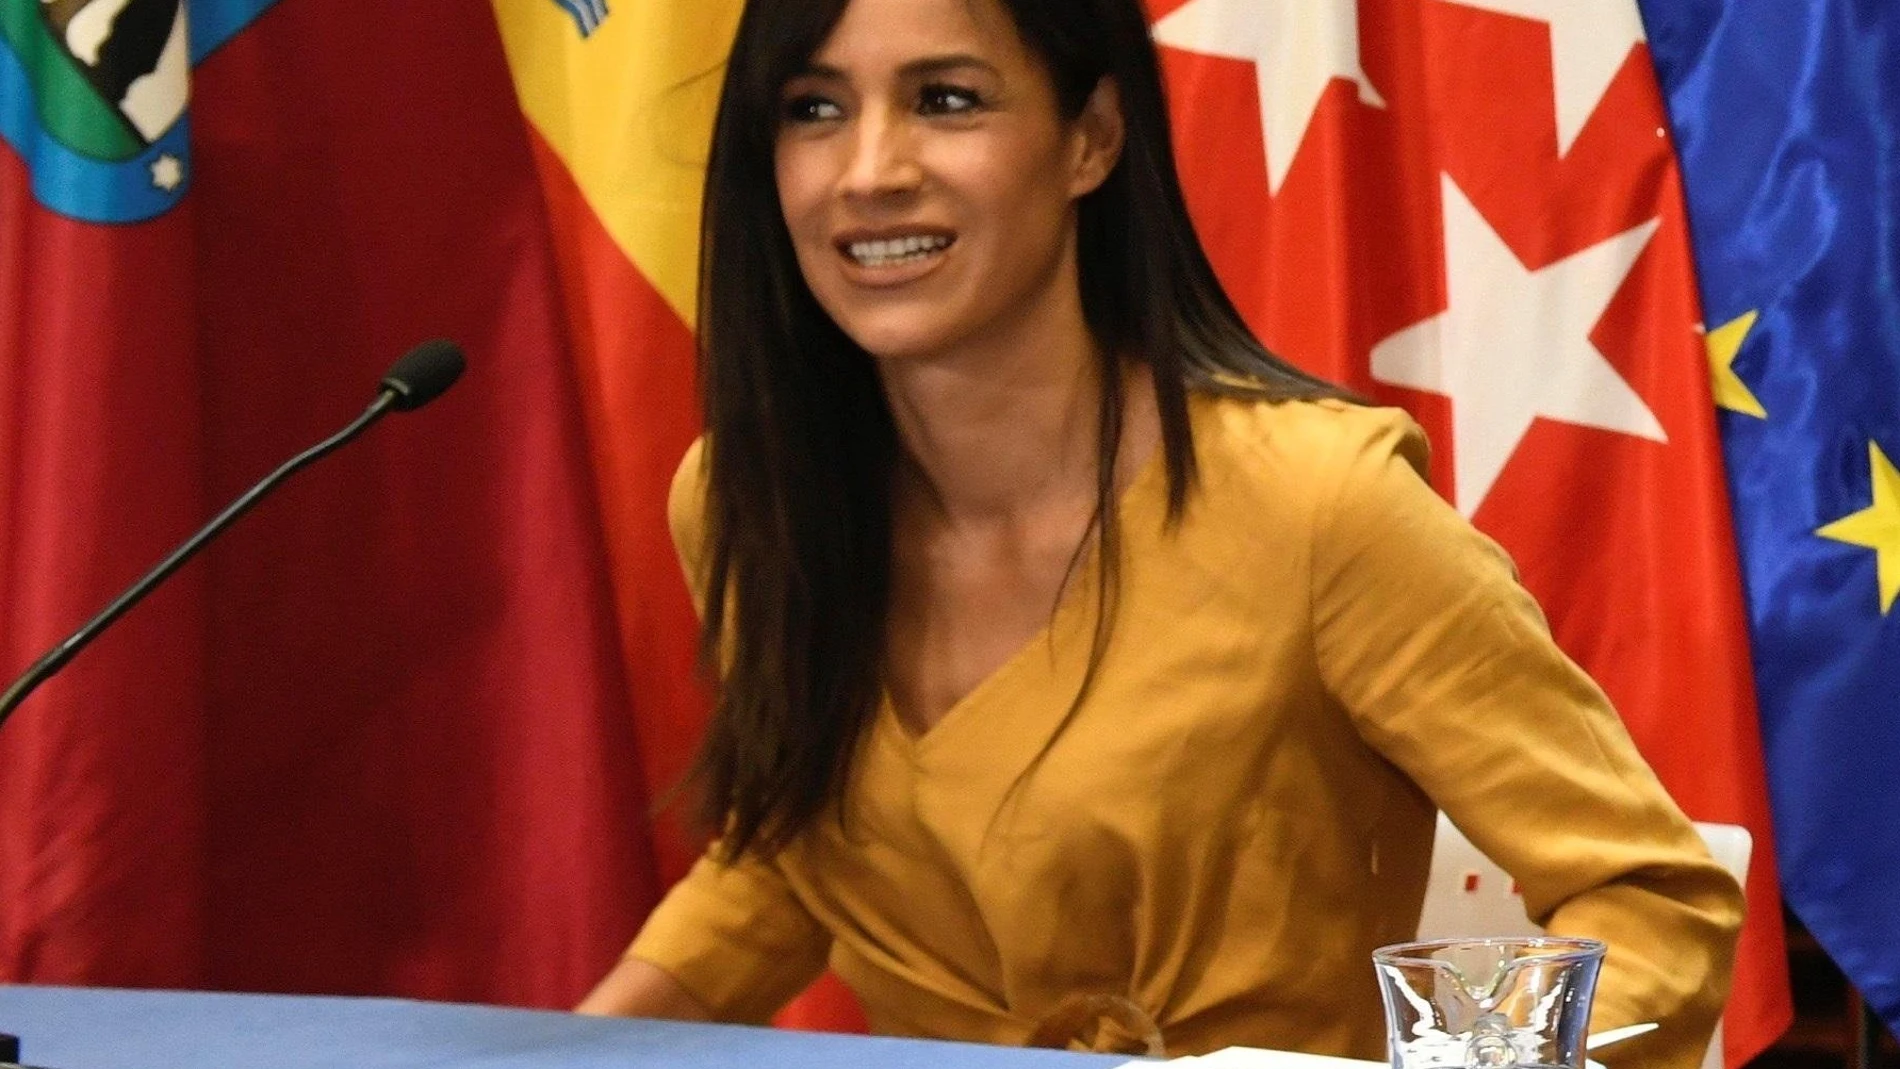 La vicealcaldesa de Madrid, Begoña Villacís, informan en una rueda de prensa de los acuerdos adoptados en la Junta de Gobierno de la ciudad.